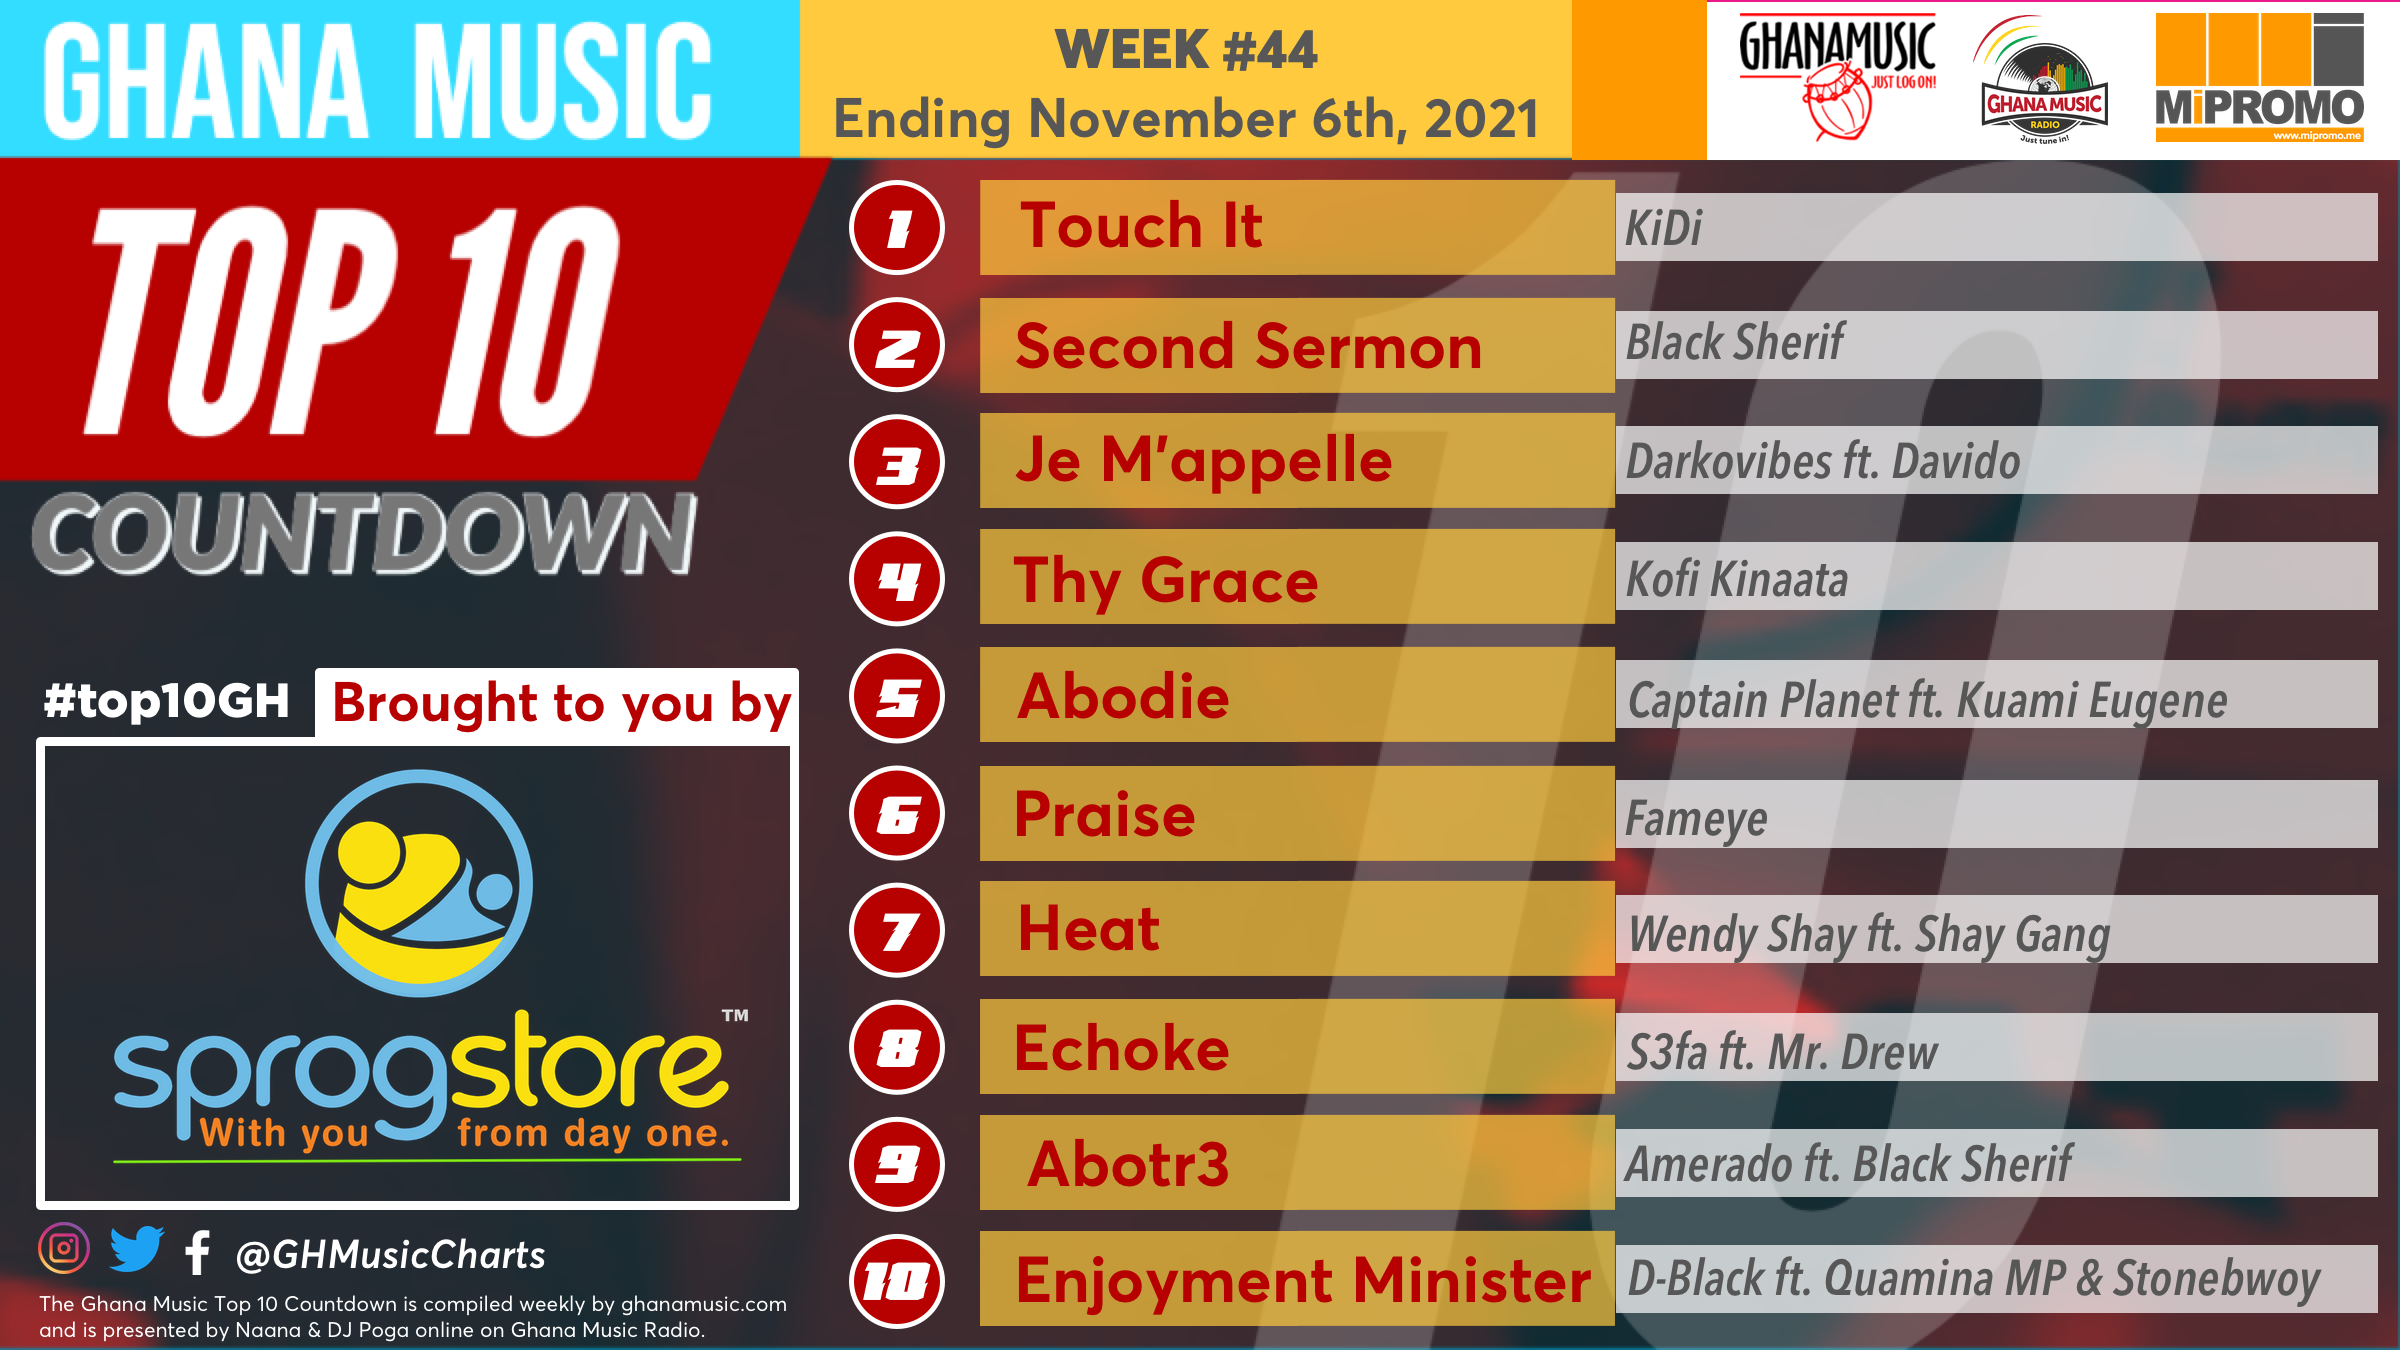 2021 Week 44: Ghana Music Top 10 Countdown